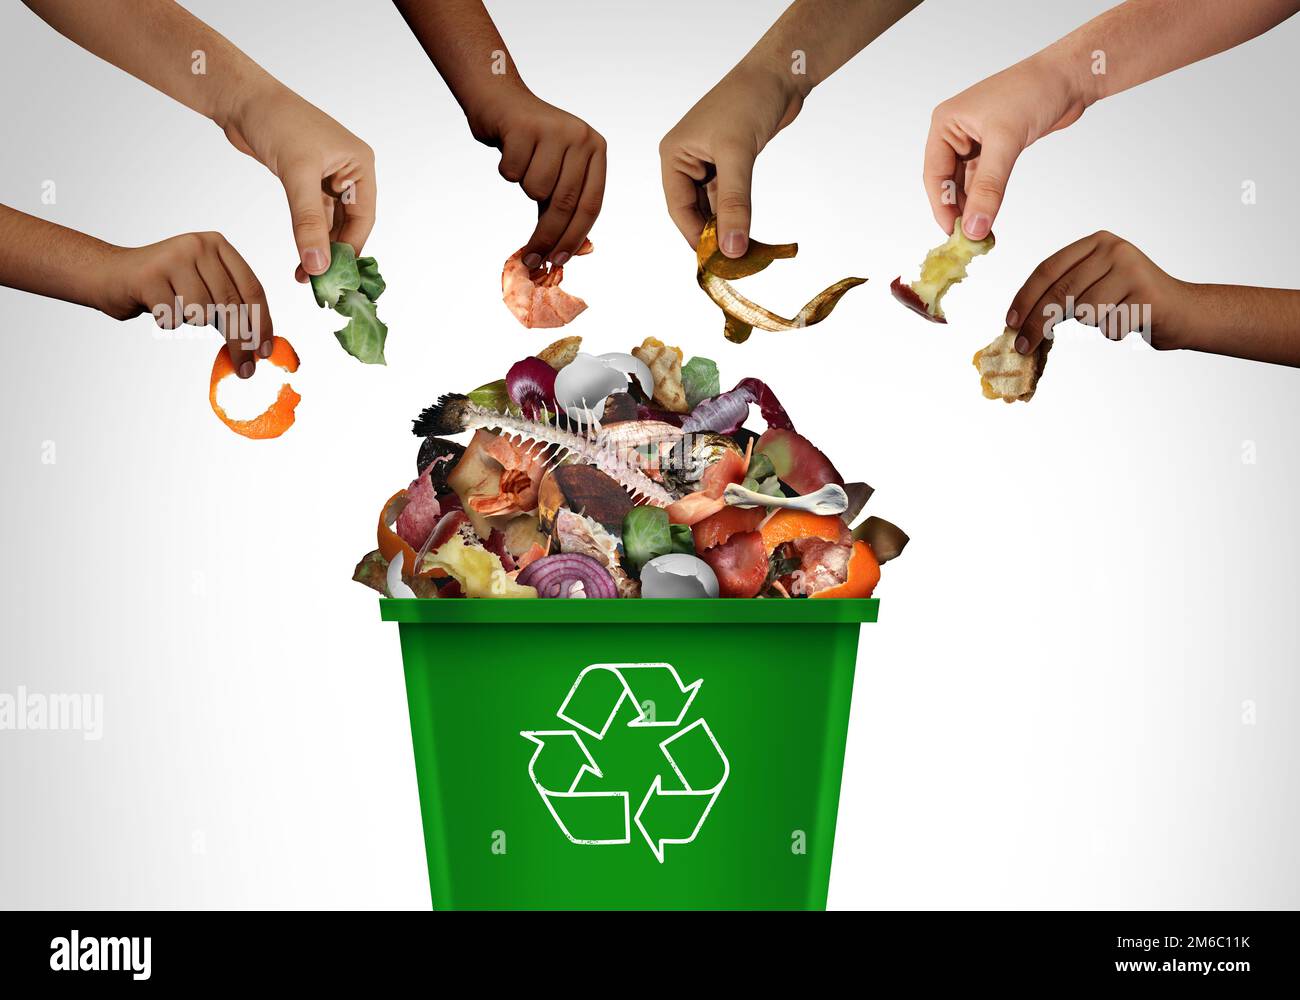 Menschen kompostieren zusammen und teilen grünen Müllkompost und recyceln Müll als Container, um organische Abfälle und kompostierte Lebensmittel zu recyceln Stockfoto